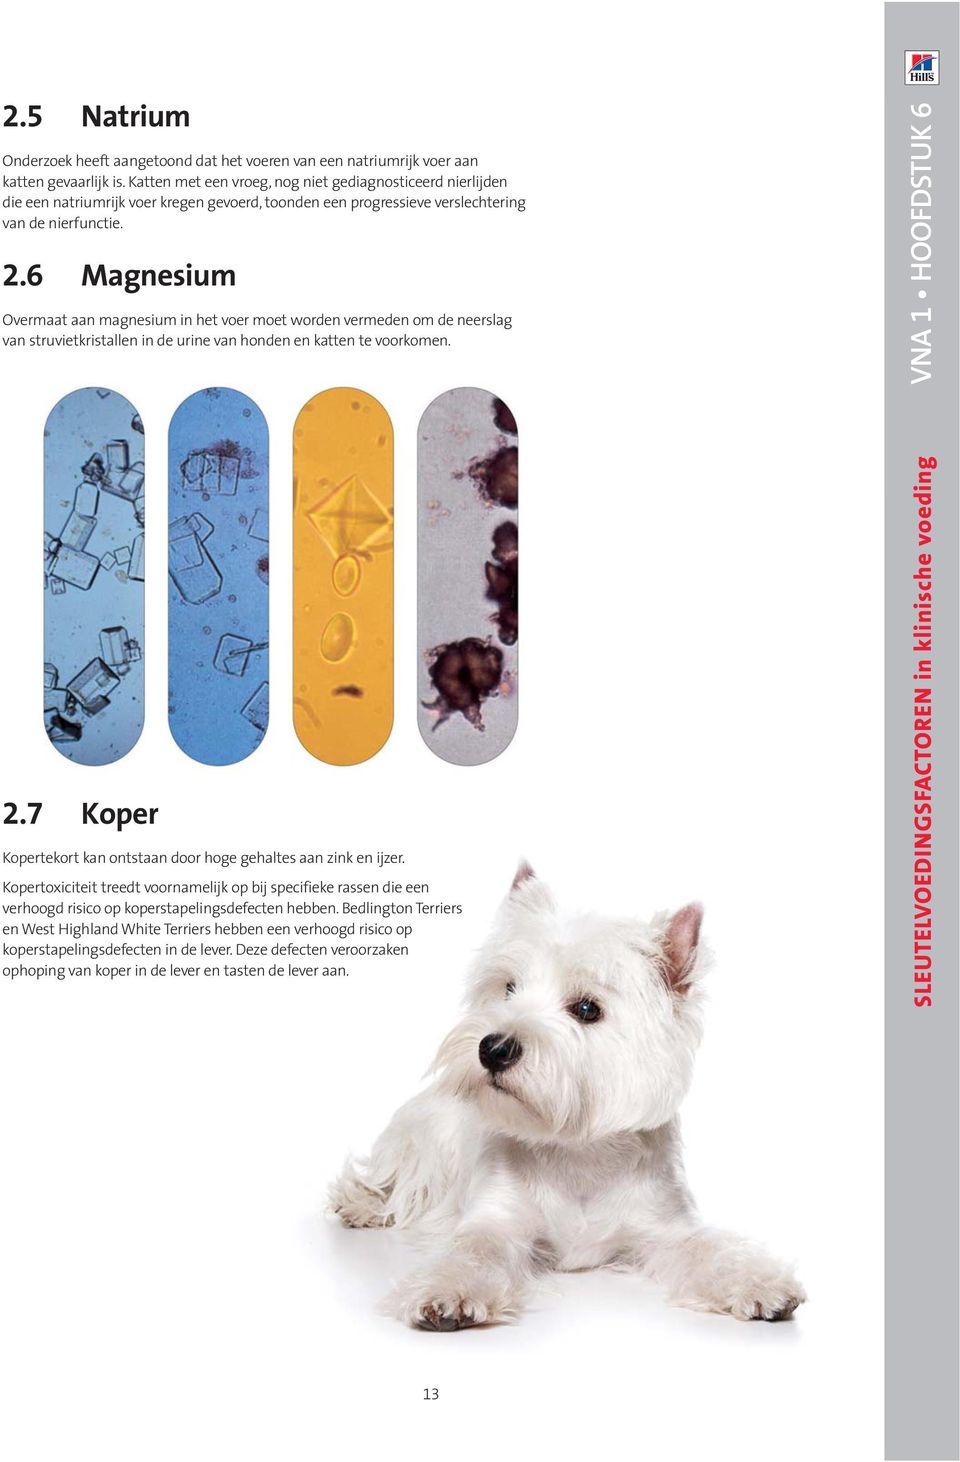 6 Magnesium Overmaat aan magnesium in het voer moet worden vermeden om de neerslag van struvietkristallen in de urine van honden en katten te voorkomen. VNA 1 HOOFDSTUK 6 2.